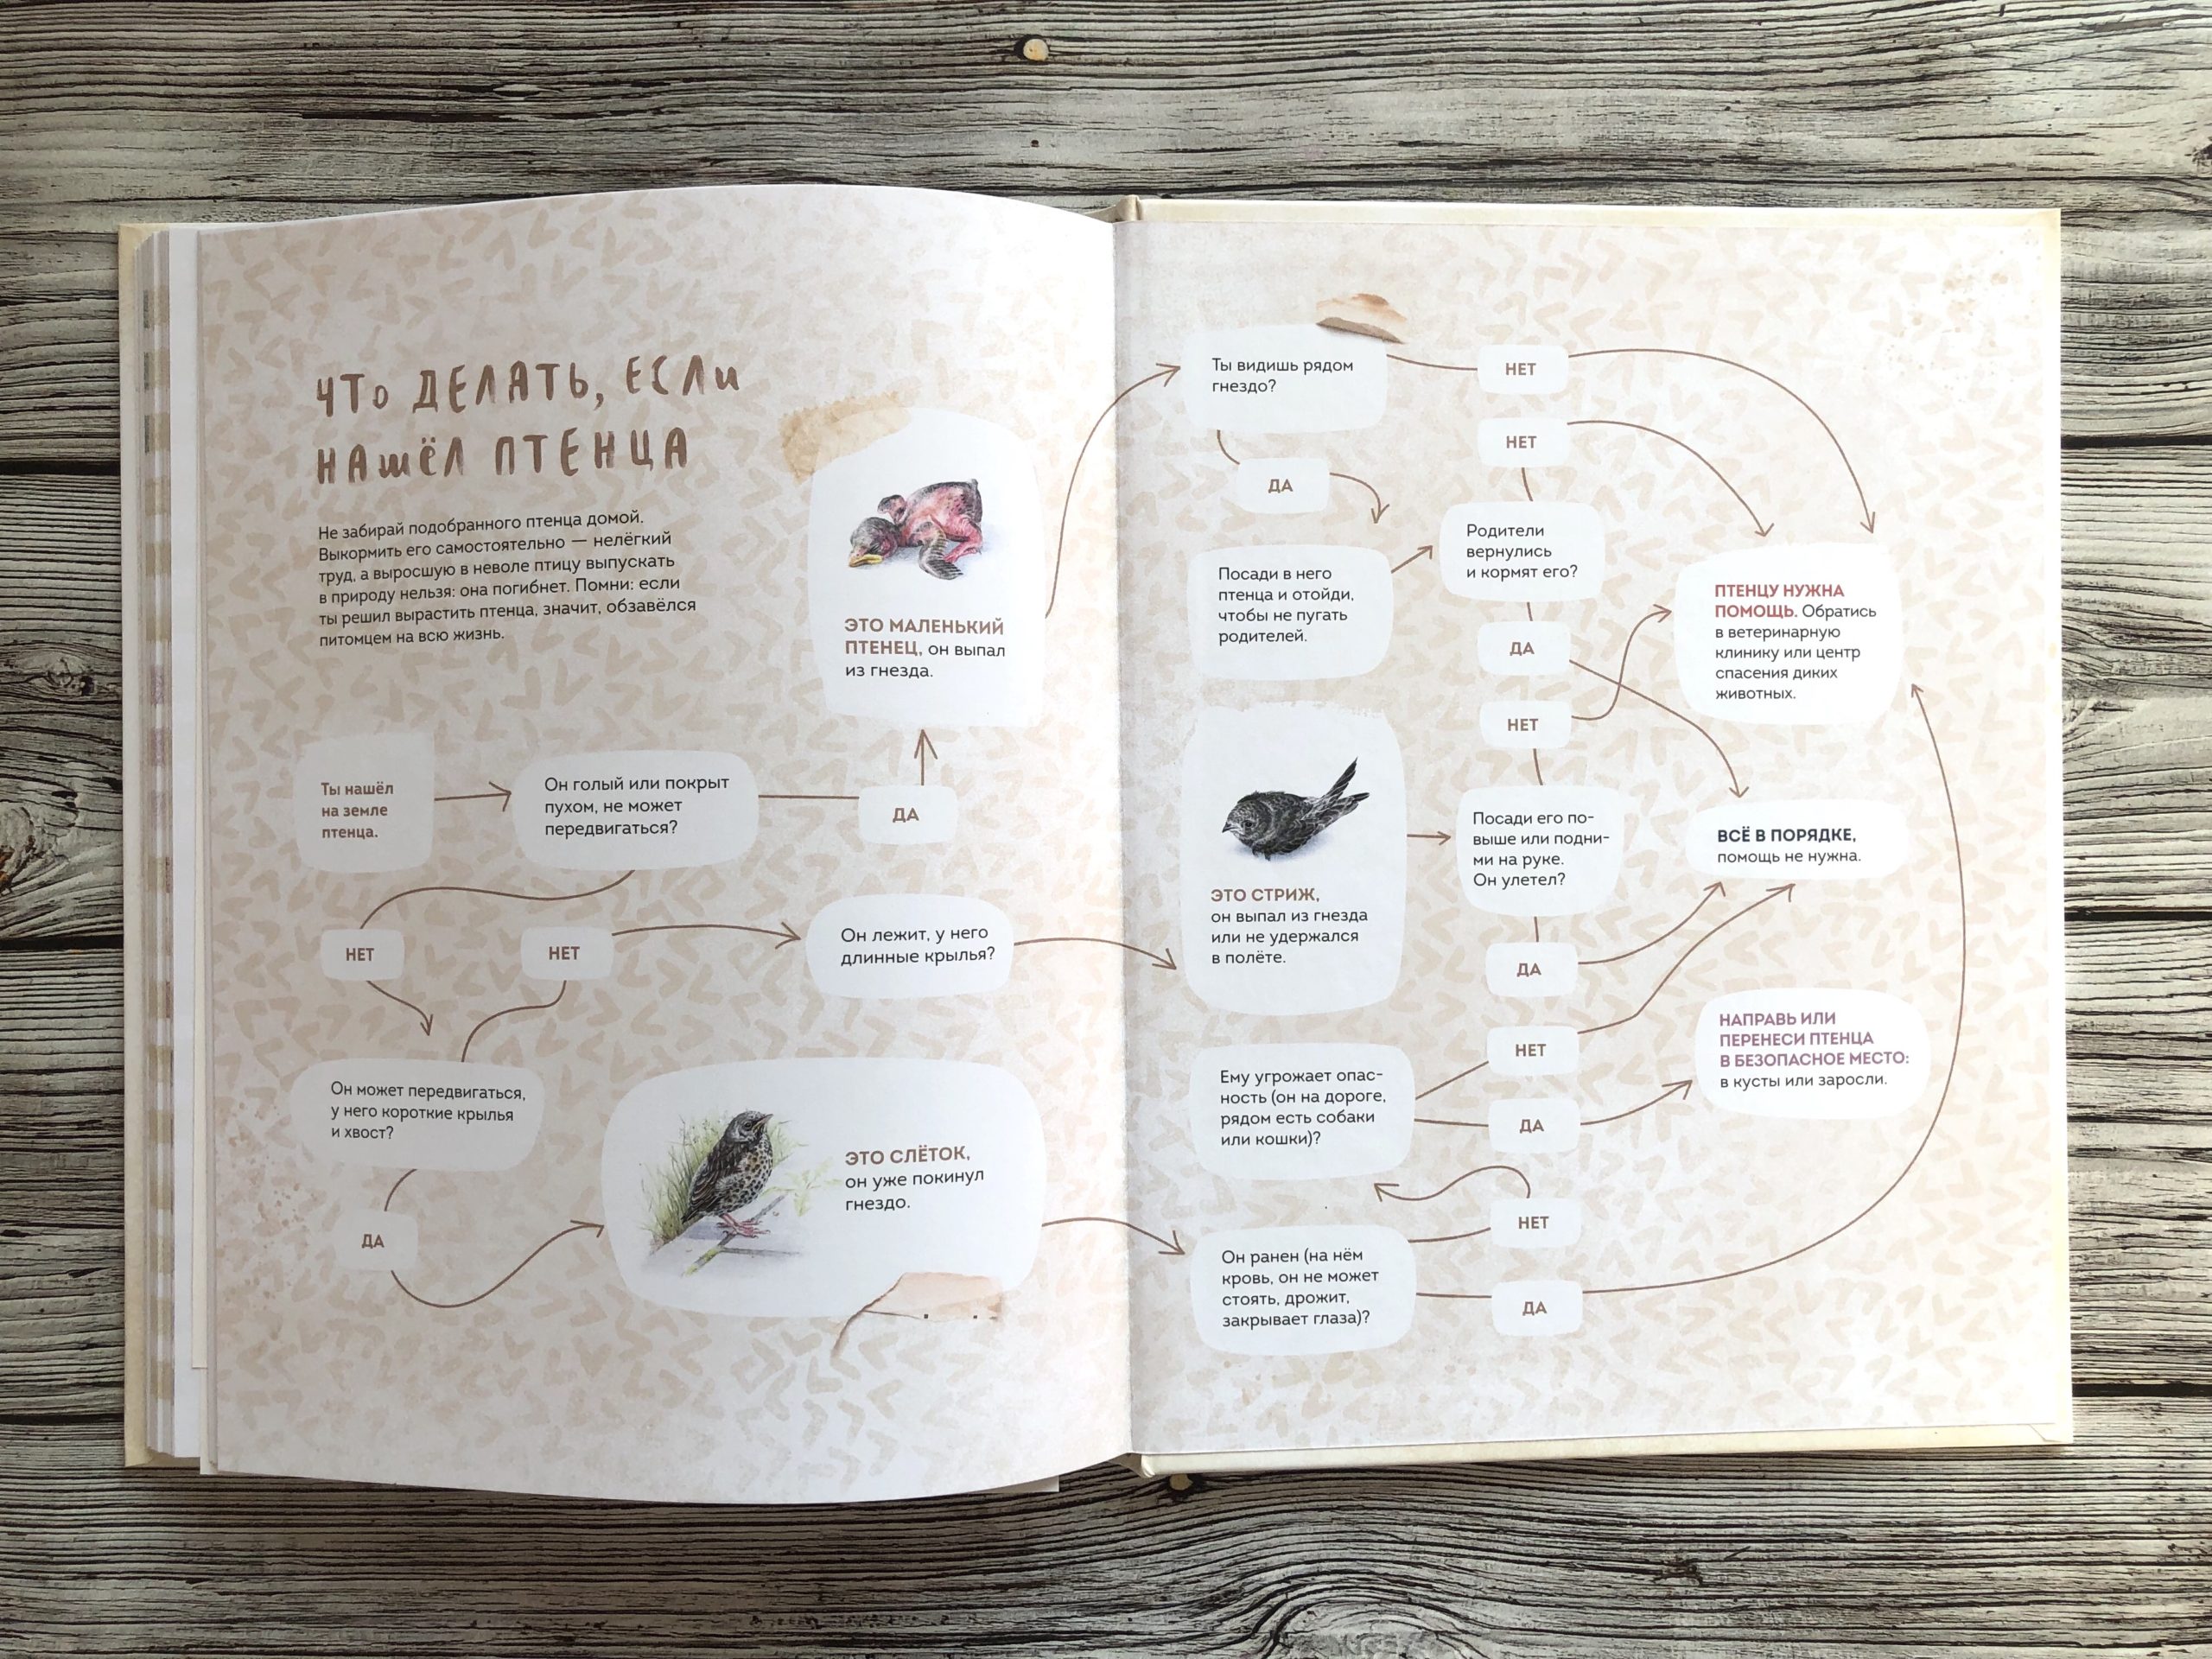 Очень красивая и полезная книга о птицах для детей - Птицы в городе 18